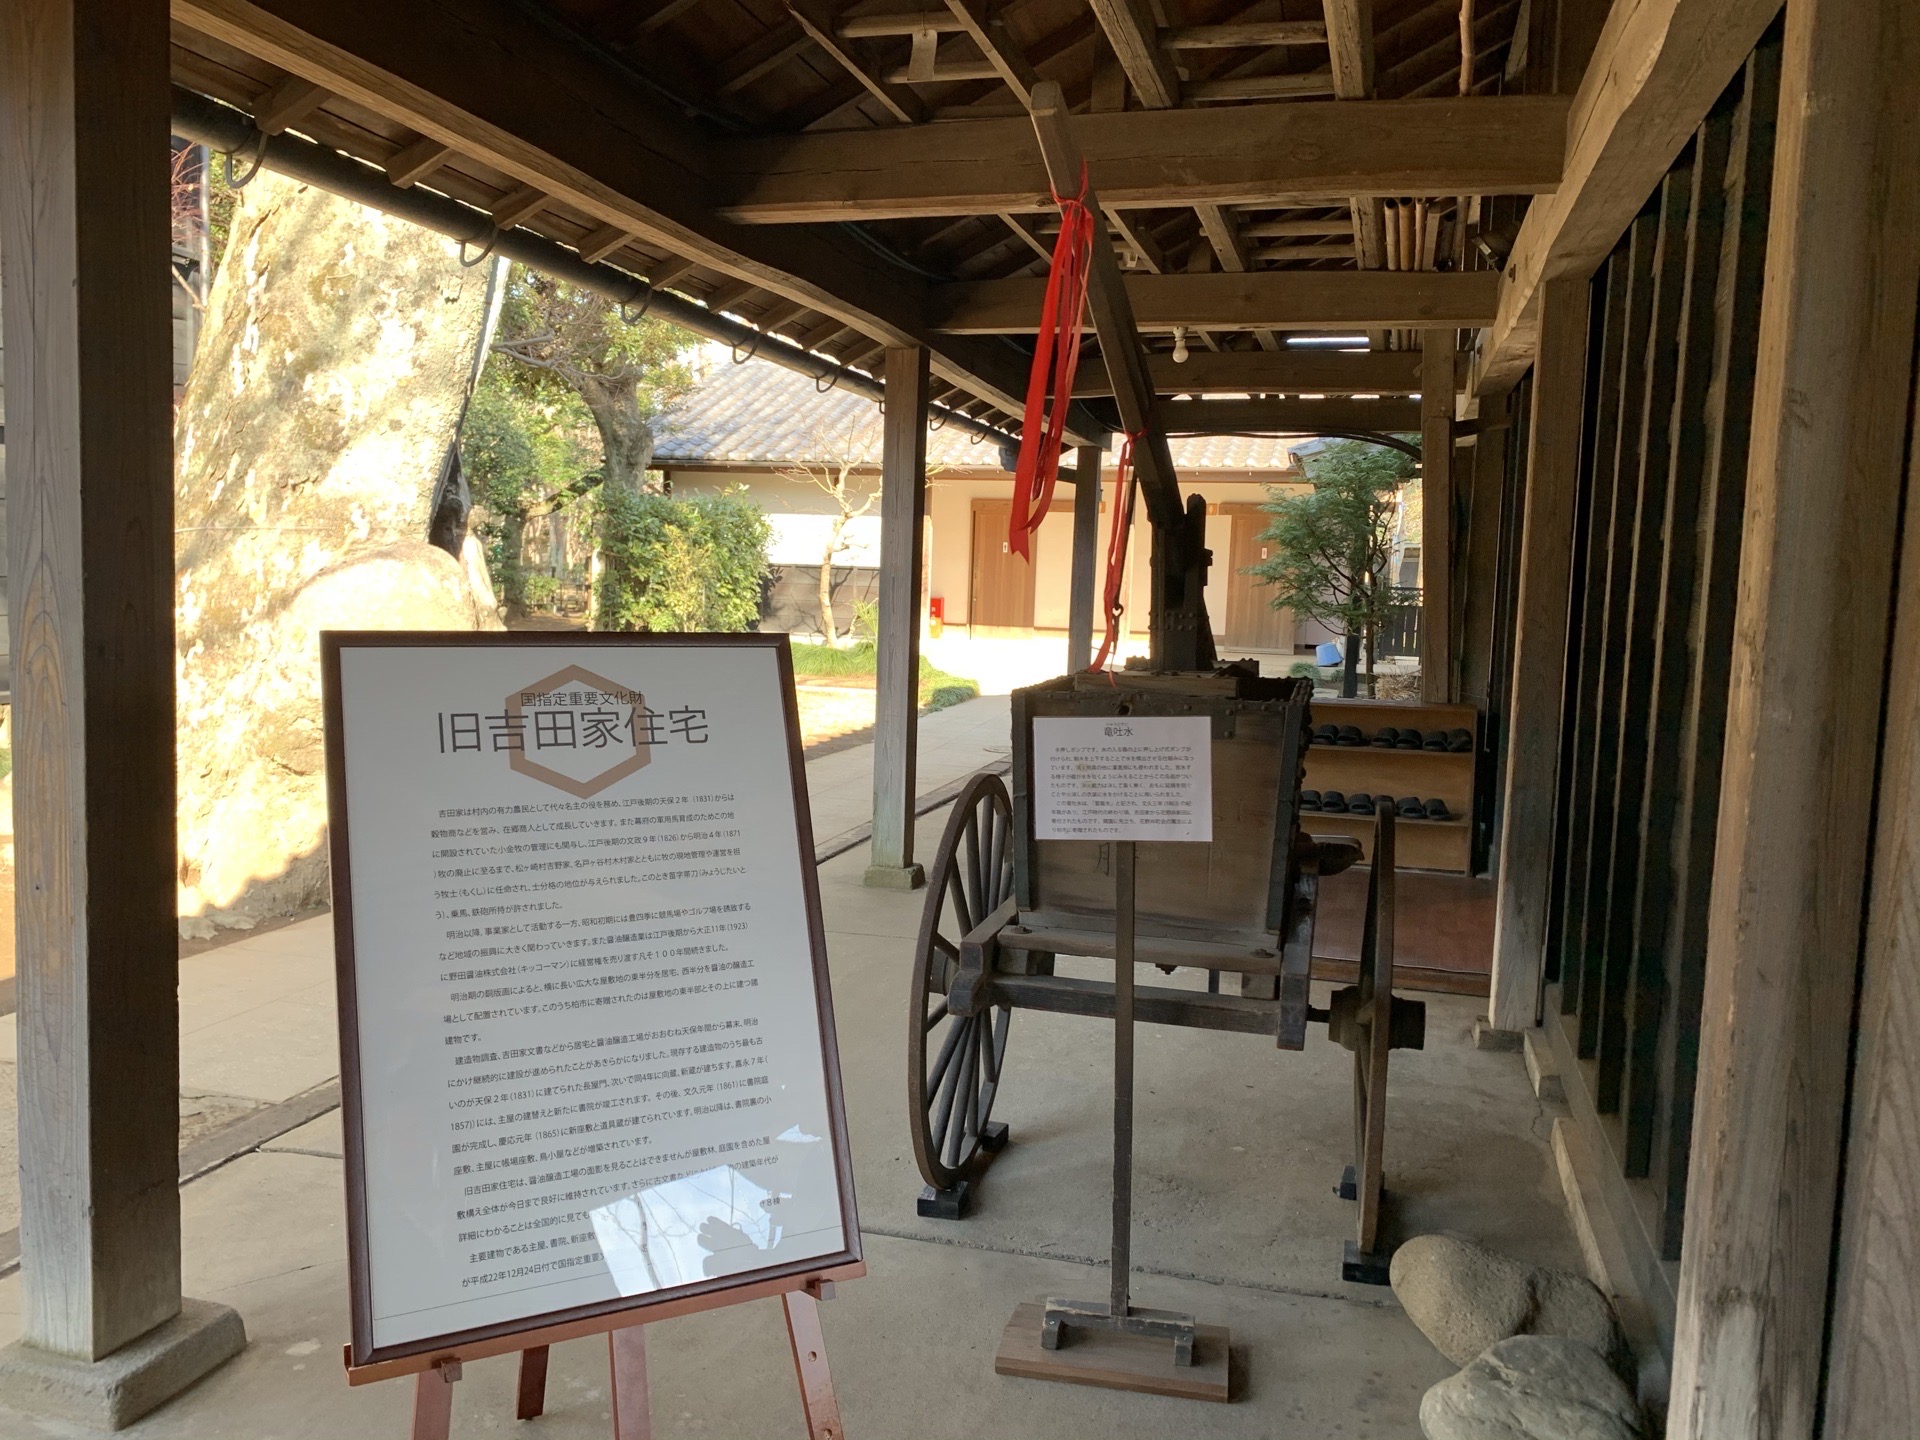 旧吉田家住宅歴史公園——吉田家是大规模代代经营农业、谷物商的商人，他们家的建筑物有160多年的历史了